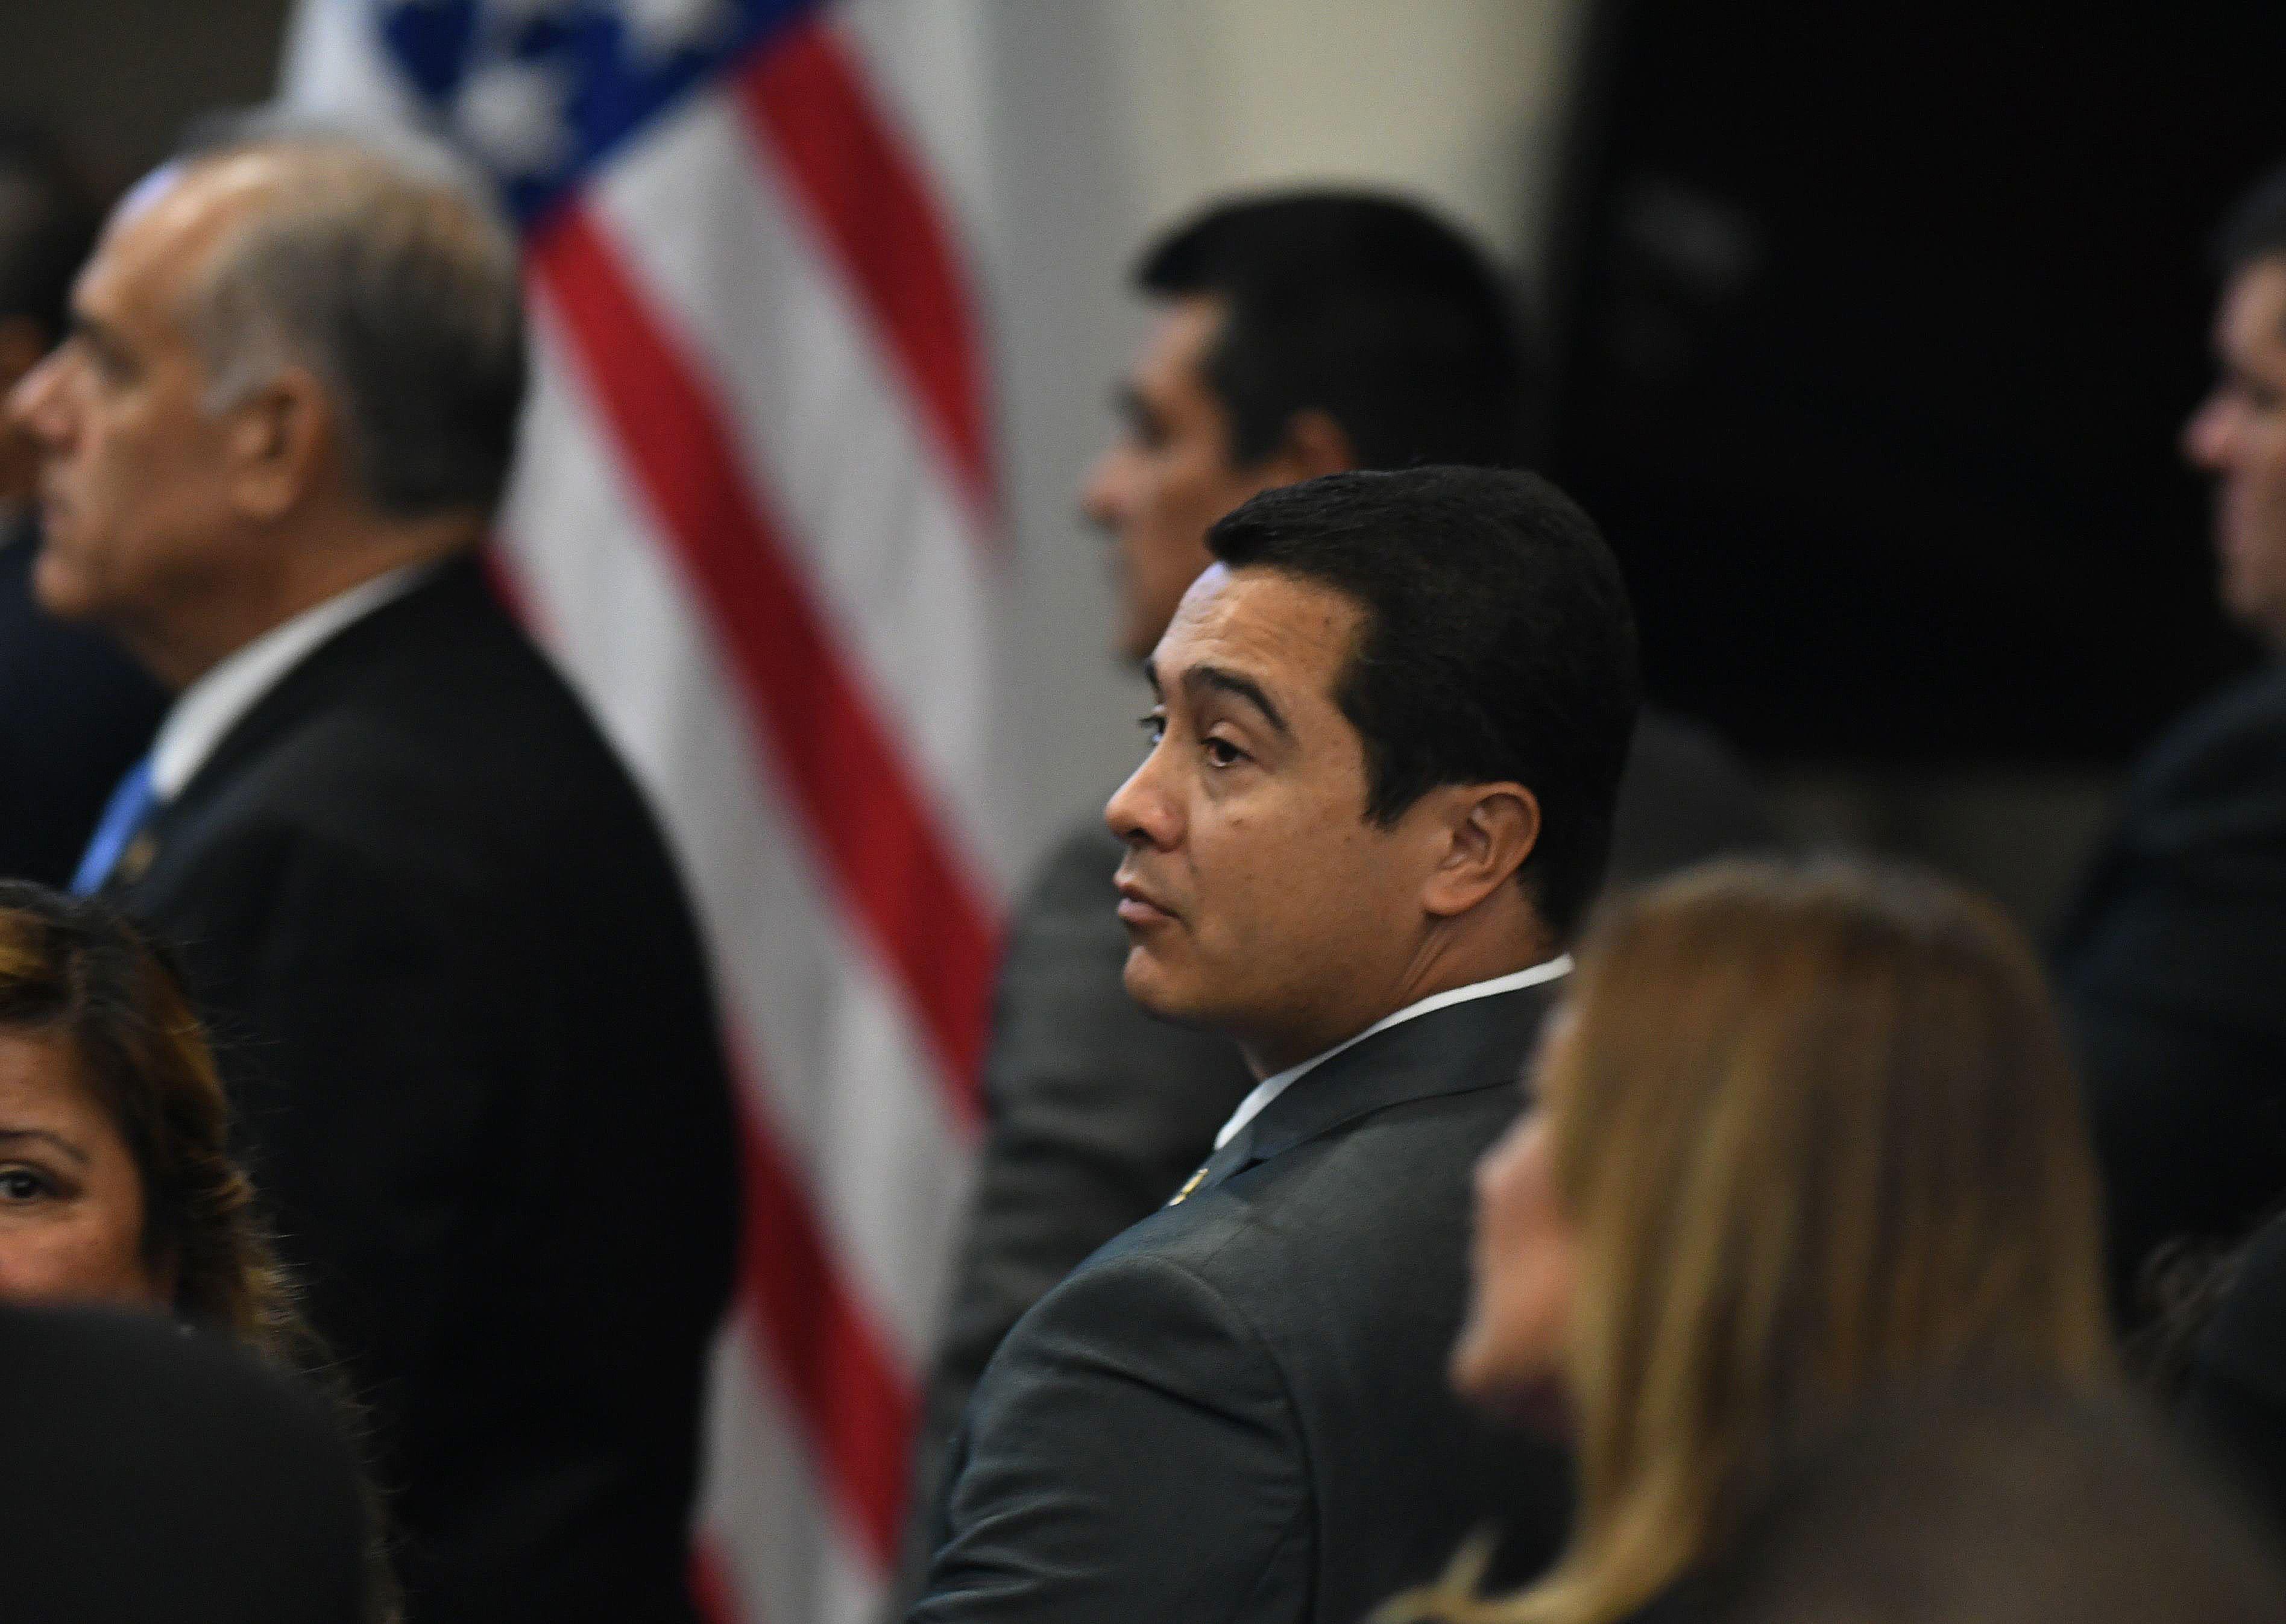 El exdiputado hondureño Tony Hernández, condenado a cadena perpetua en EE.UU., rodeado de personas frente a la bandera de EE.UU.